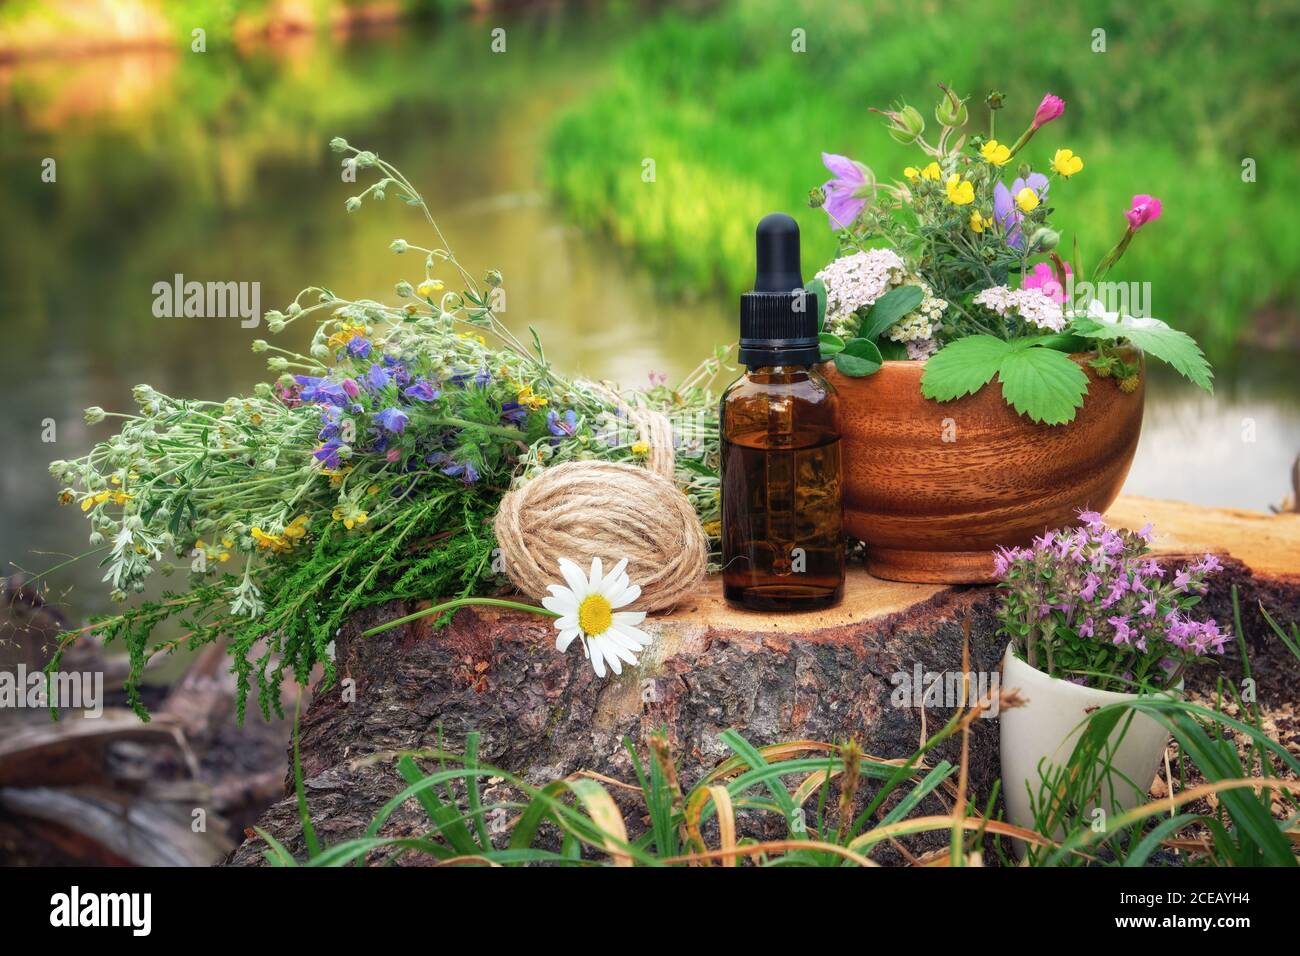 Mörser von Heilkräutern, Tropfflasche mit ätherischem Öl, Bündel von Heilpflanzen auf einem Holzstumpf am Ufer des schönen Waldflusses im Freien. Stockfoto